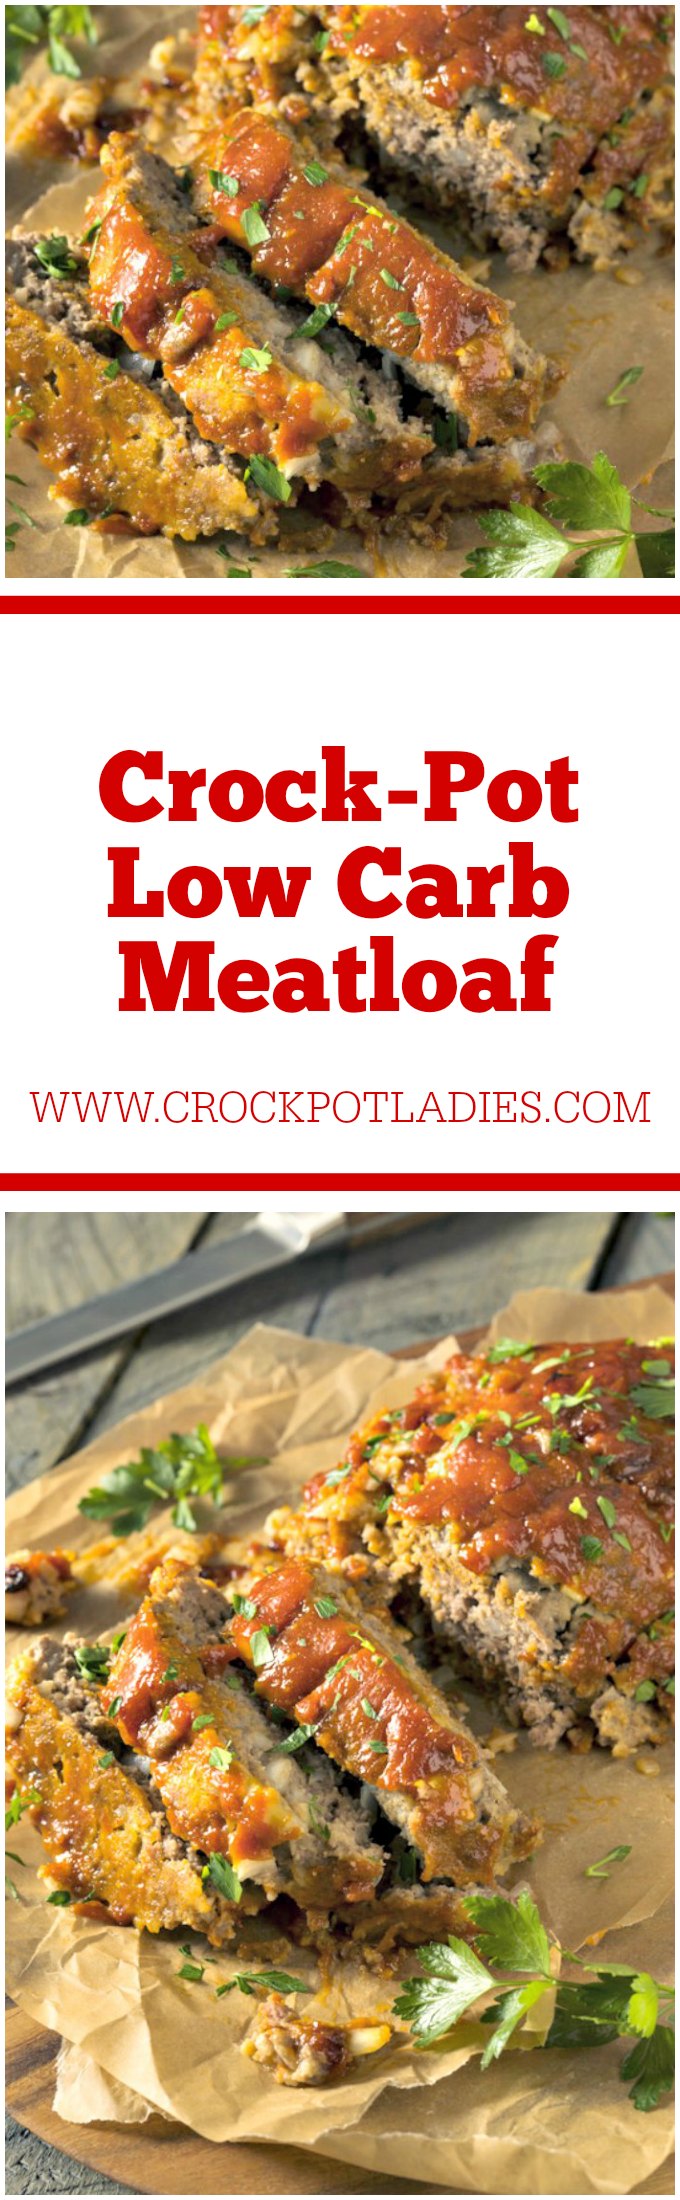 Crock-Pot Low Carb Meatloaf